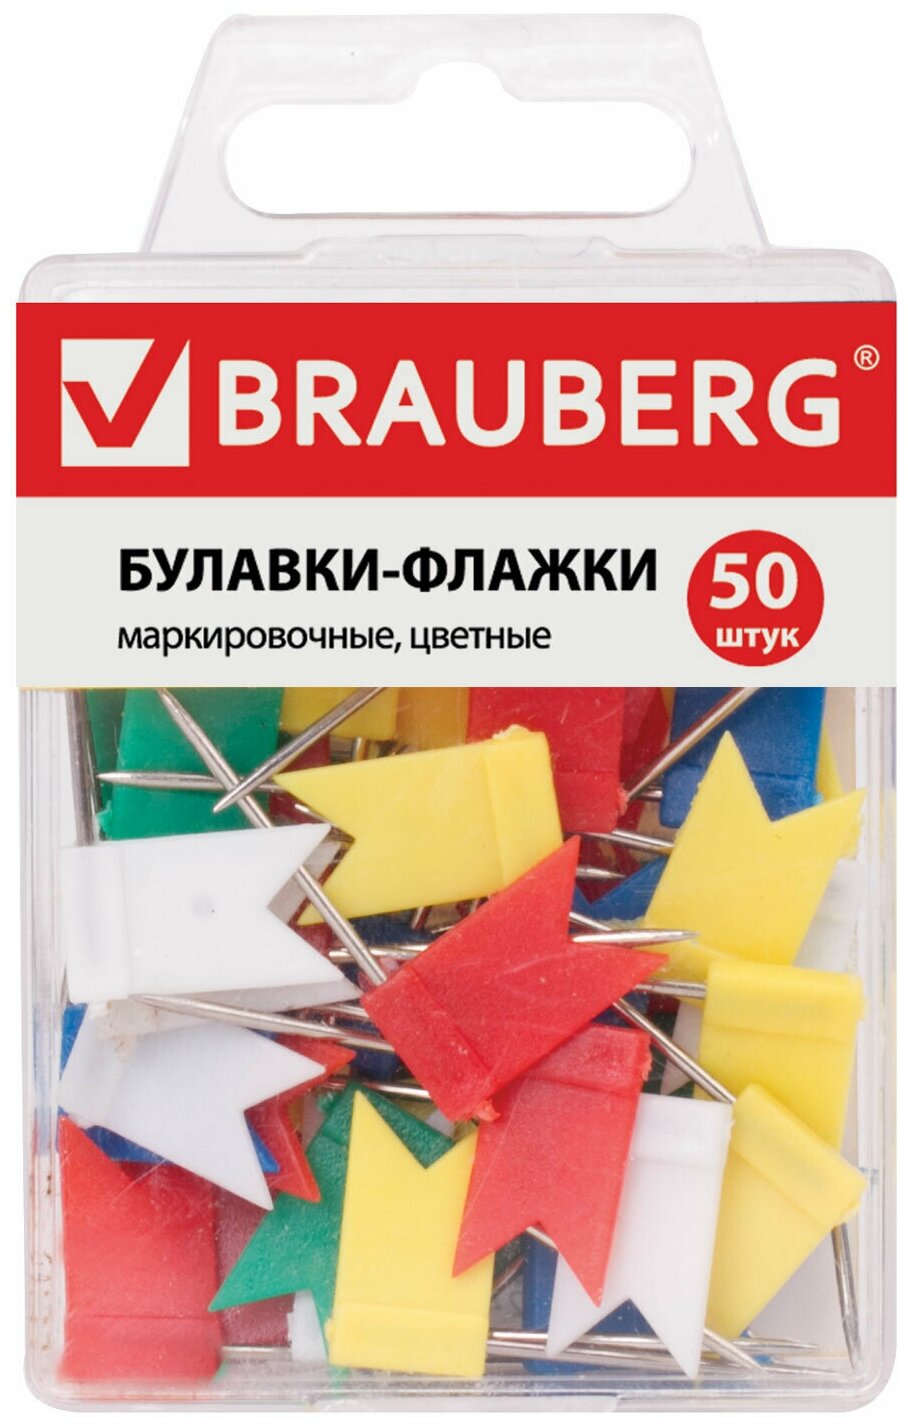 Булавки-флажки маркировочные BRAUBERG цветные, 50 шт, в пласт. коробке с европодвесом, 221537